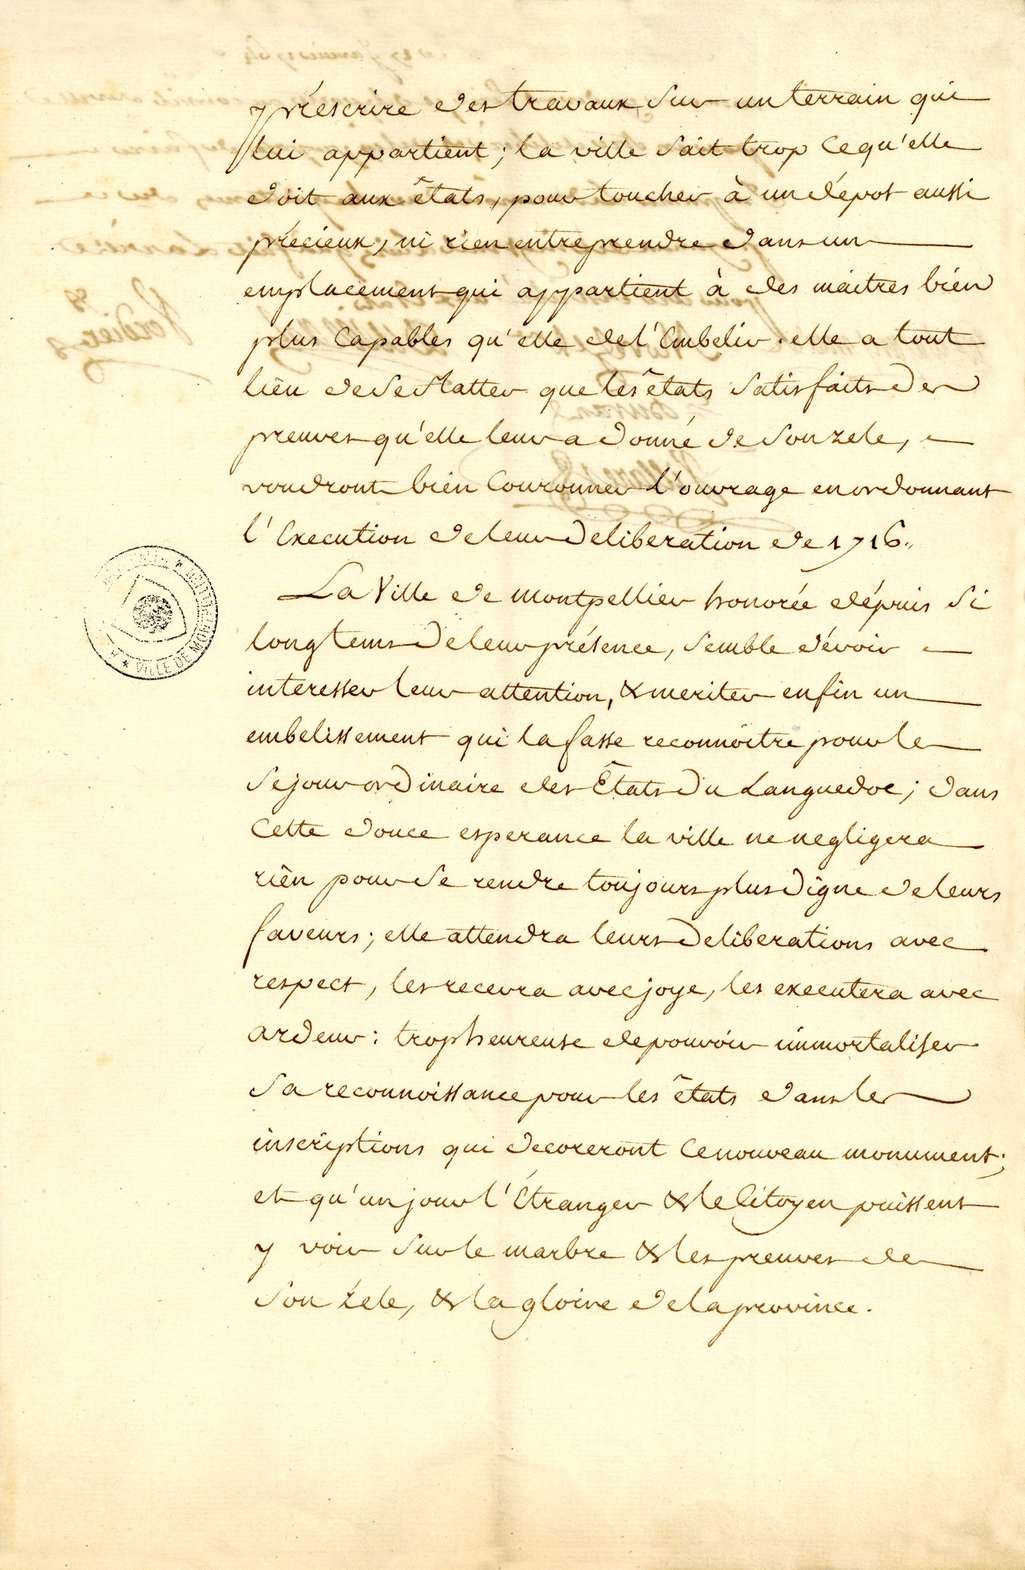 Mémoire du Peyrou, DD98, 1764, p.5. Archives Ville de Montpellier